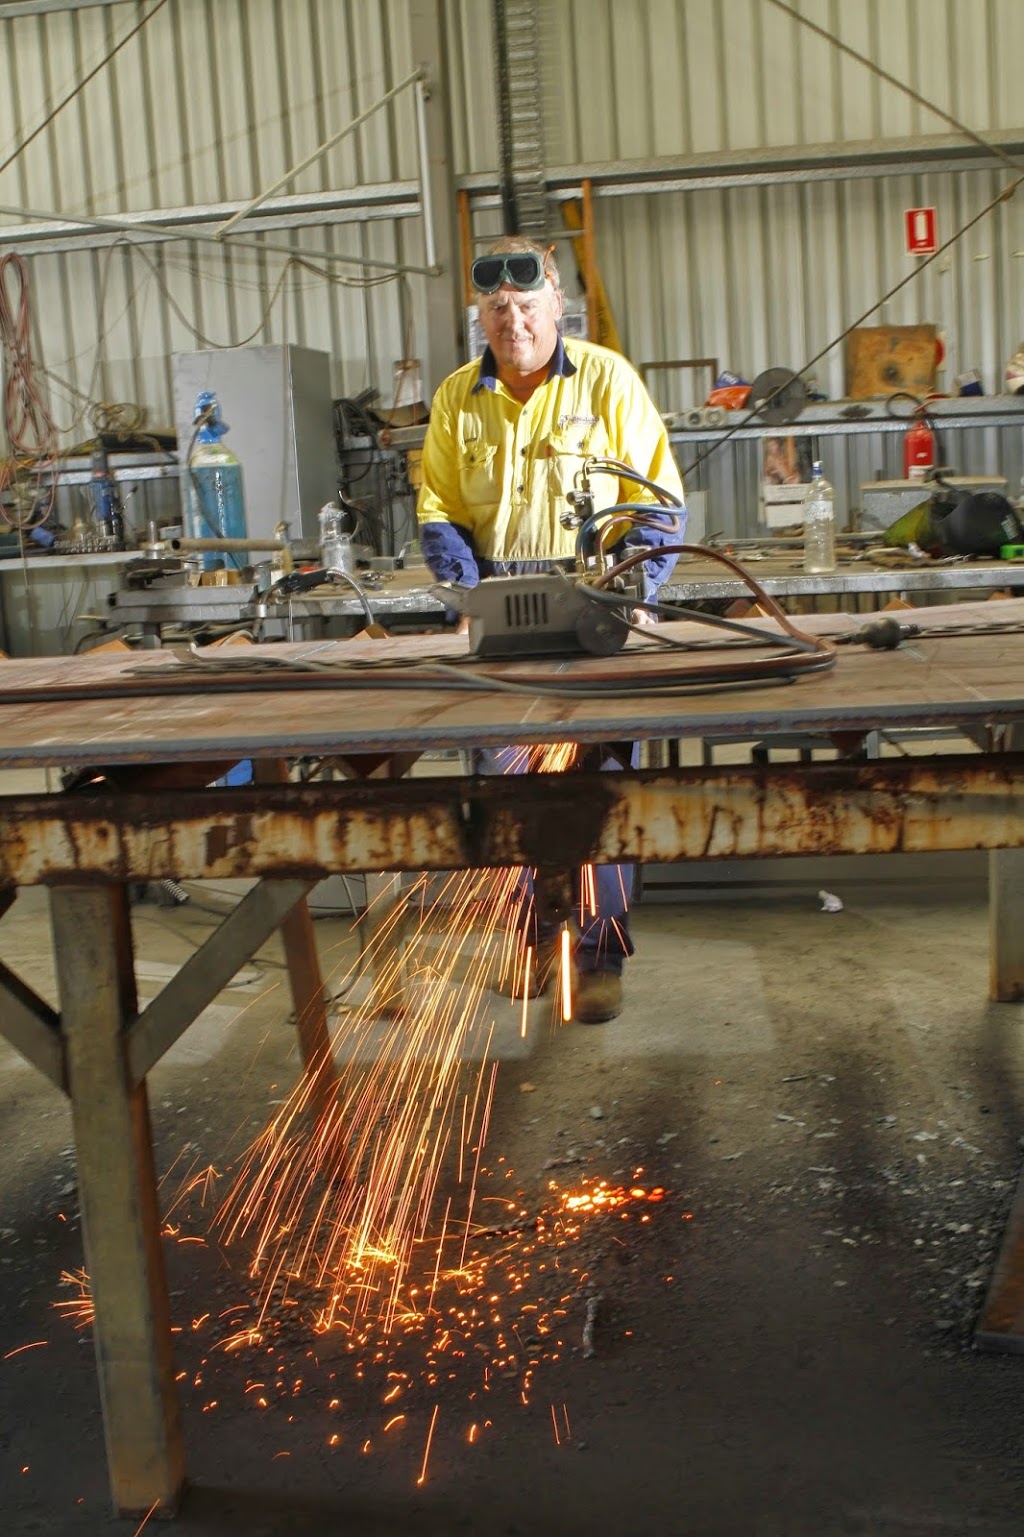 Grafton Metal & Fabrication | store | 19 Through St, South Grafton NSW 2460, Australia | 0266431060 OR +61 2 6643 1060